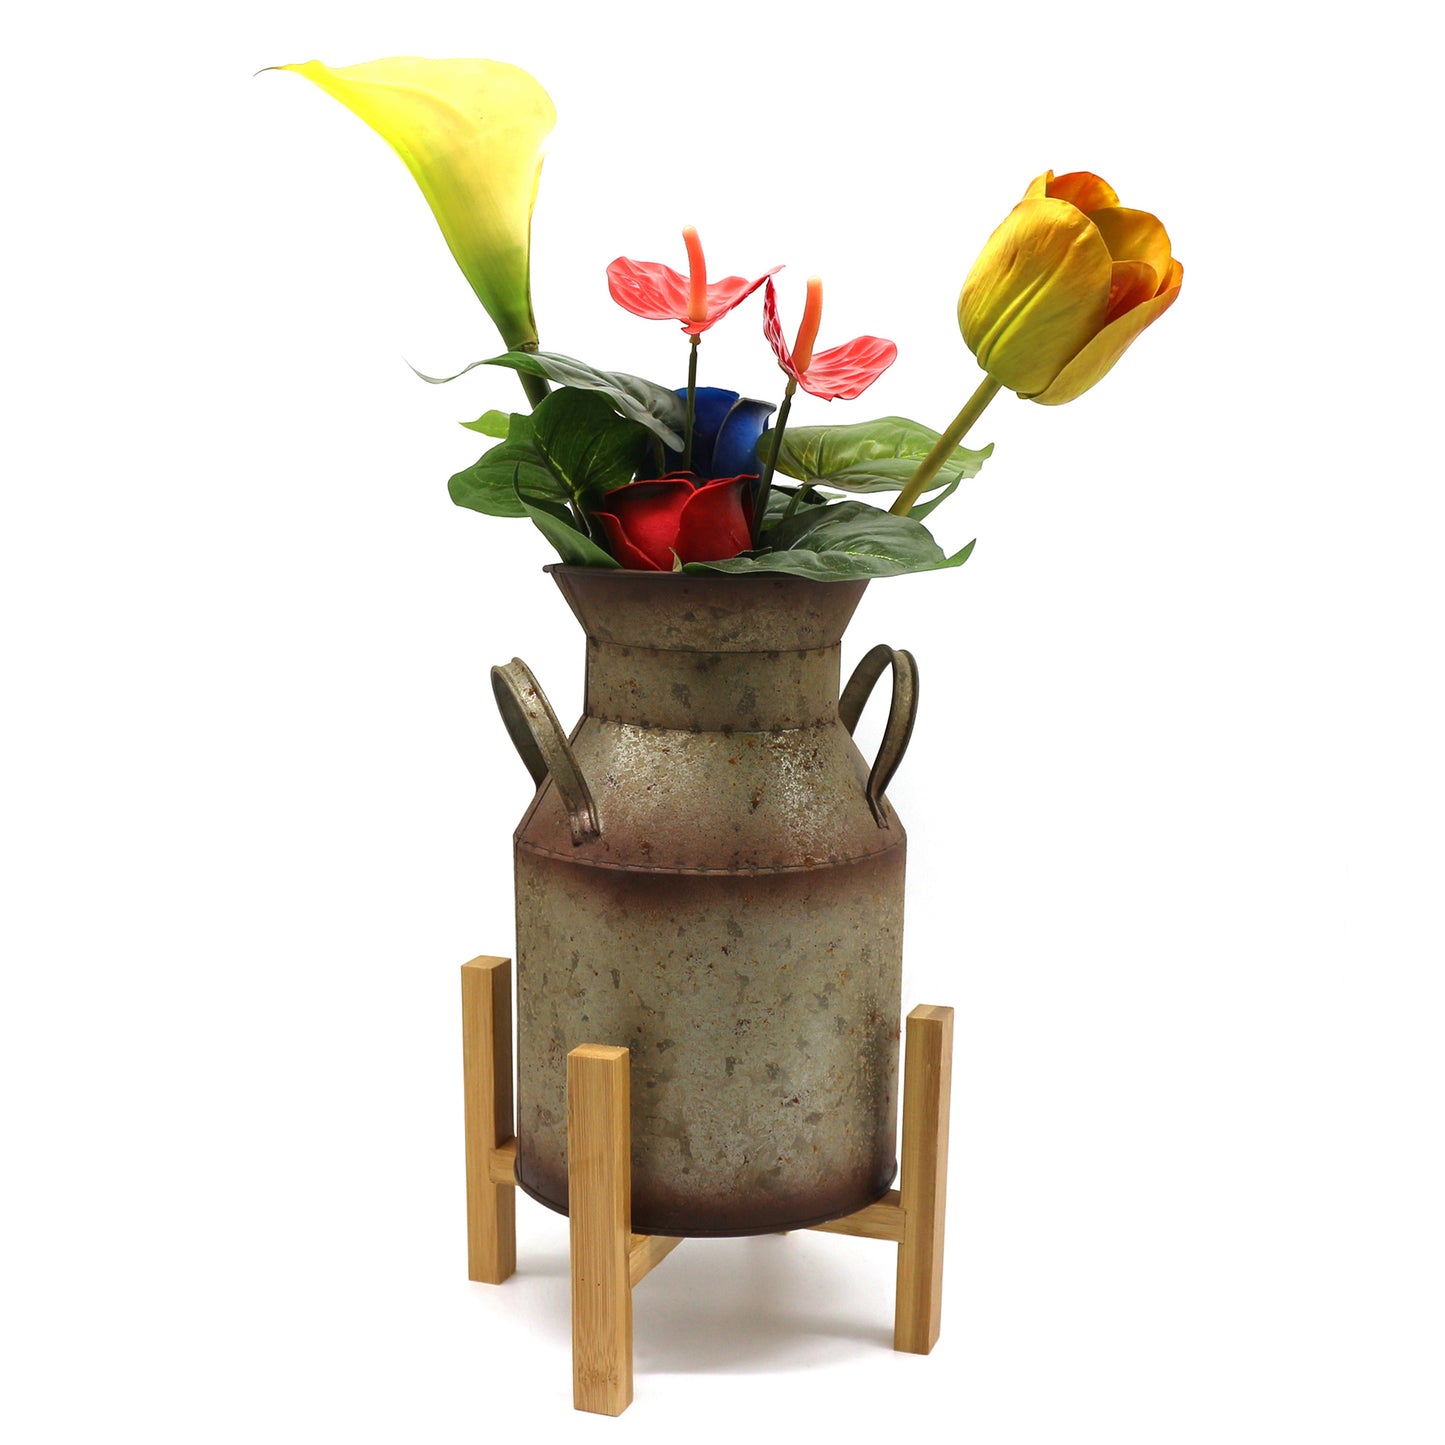 CVHOMEDECO. Rustic Primitives Bamboo Indoor/Outdoor Planter Potted Stand Flower Pot Holder Vase Display Rack Décor. Inside Diameter 7 Inch